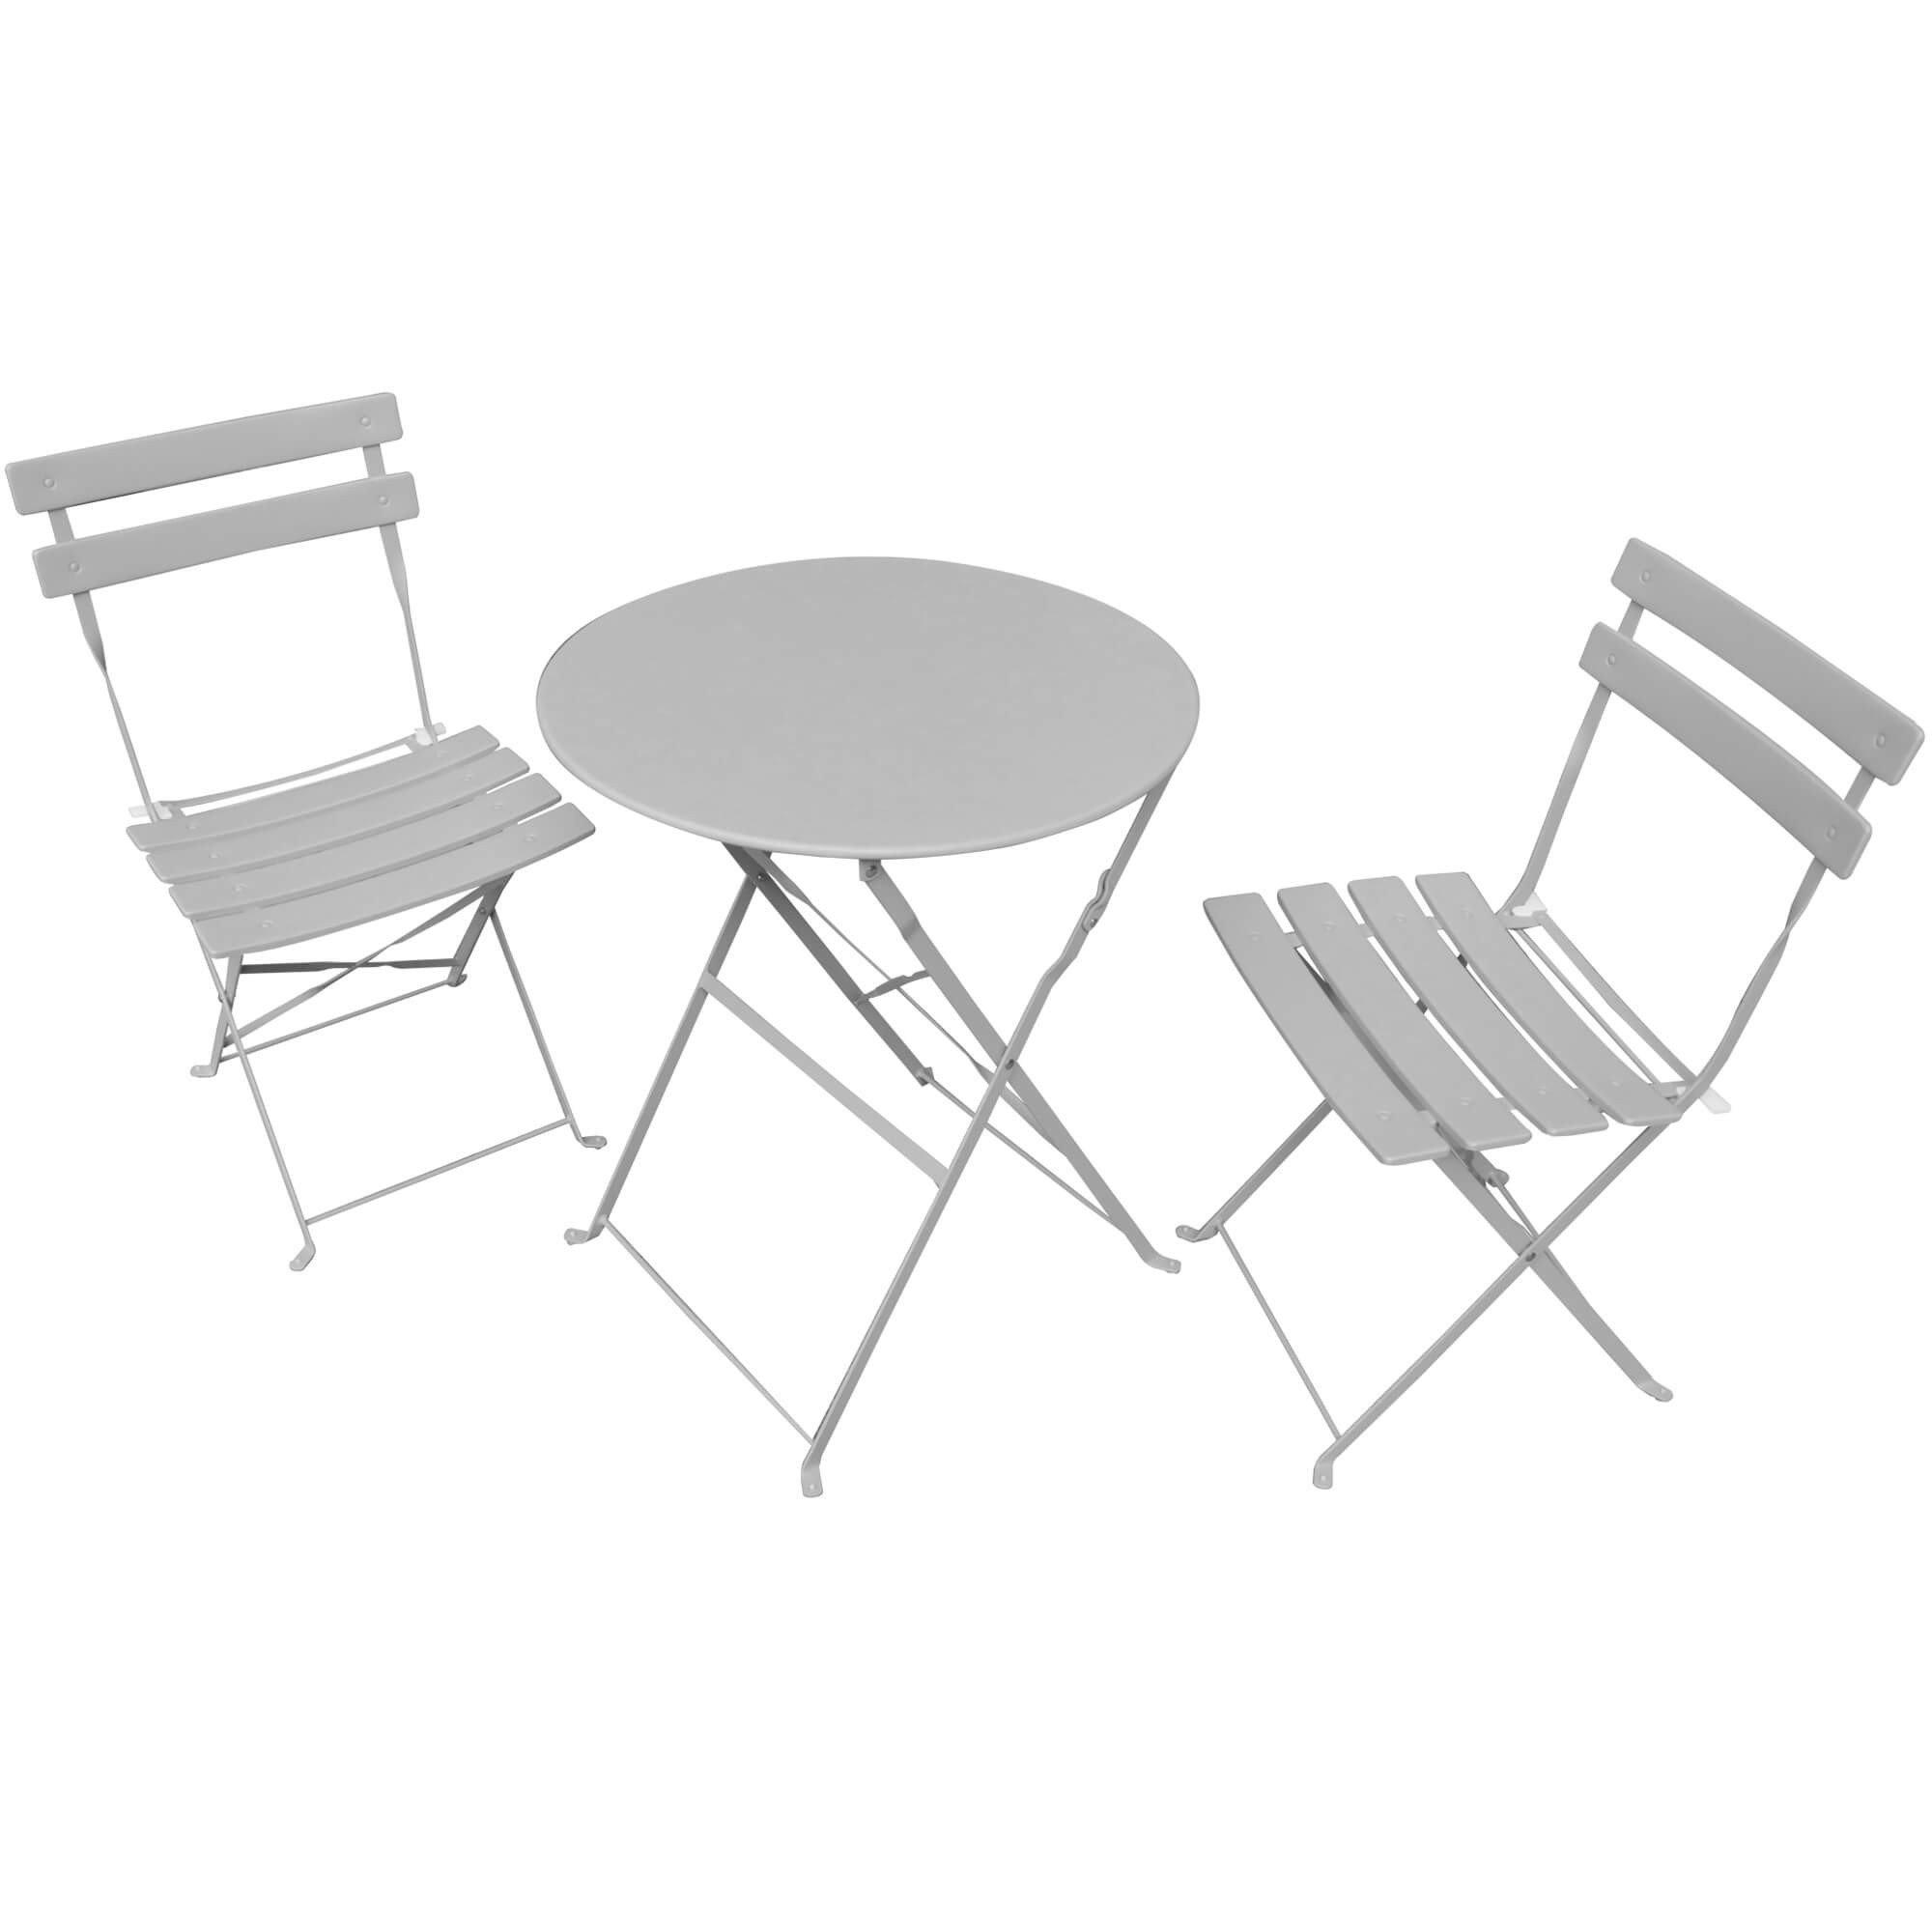 Zestaw mebli balkonowych ORION Okrągły stół i 2 krzesła w eleganckiej szarości - AKORD Fabryka Mebli